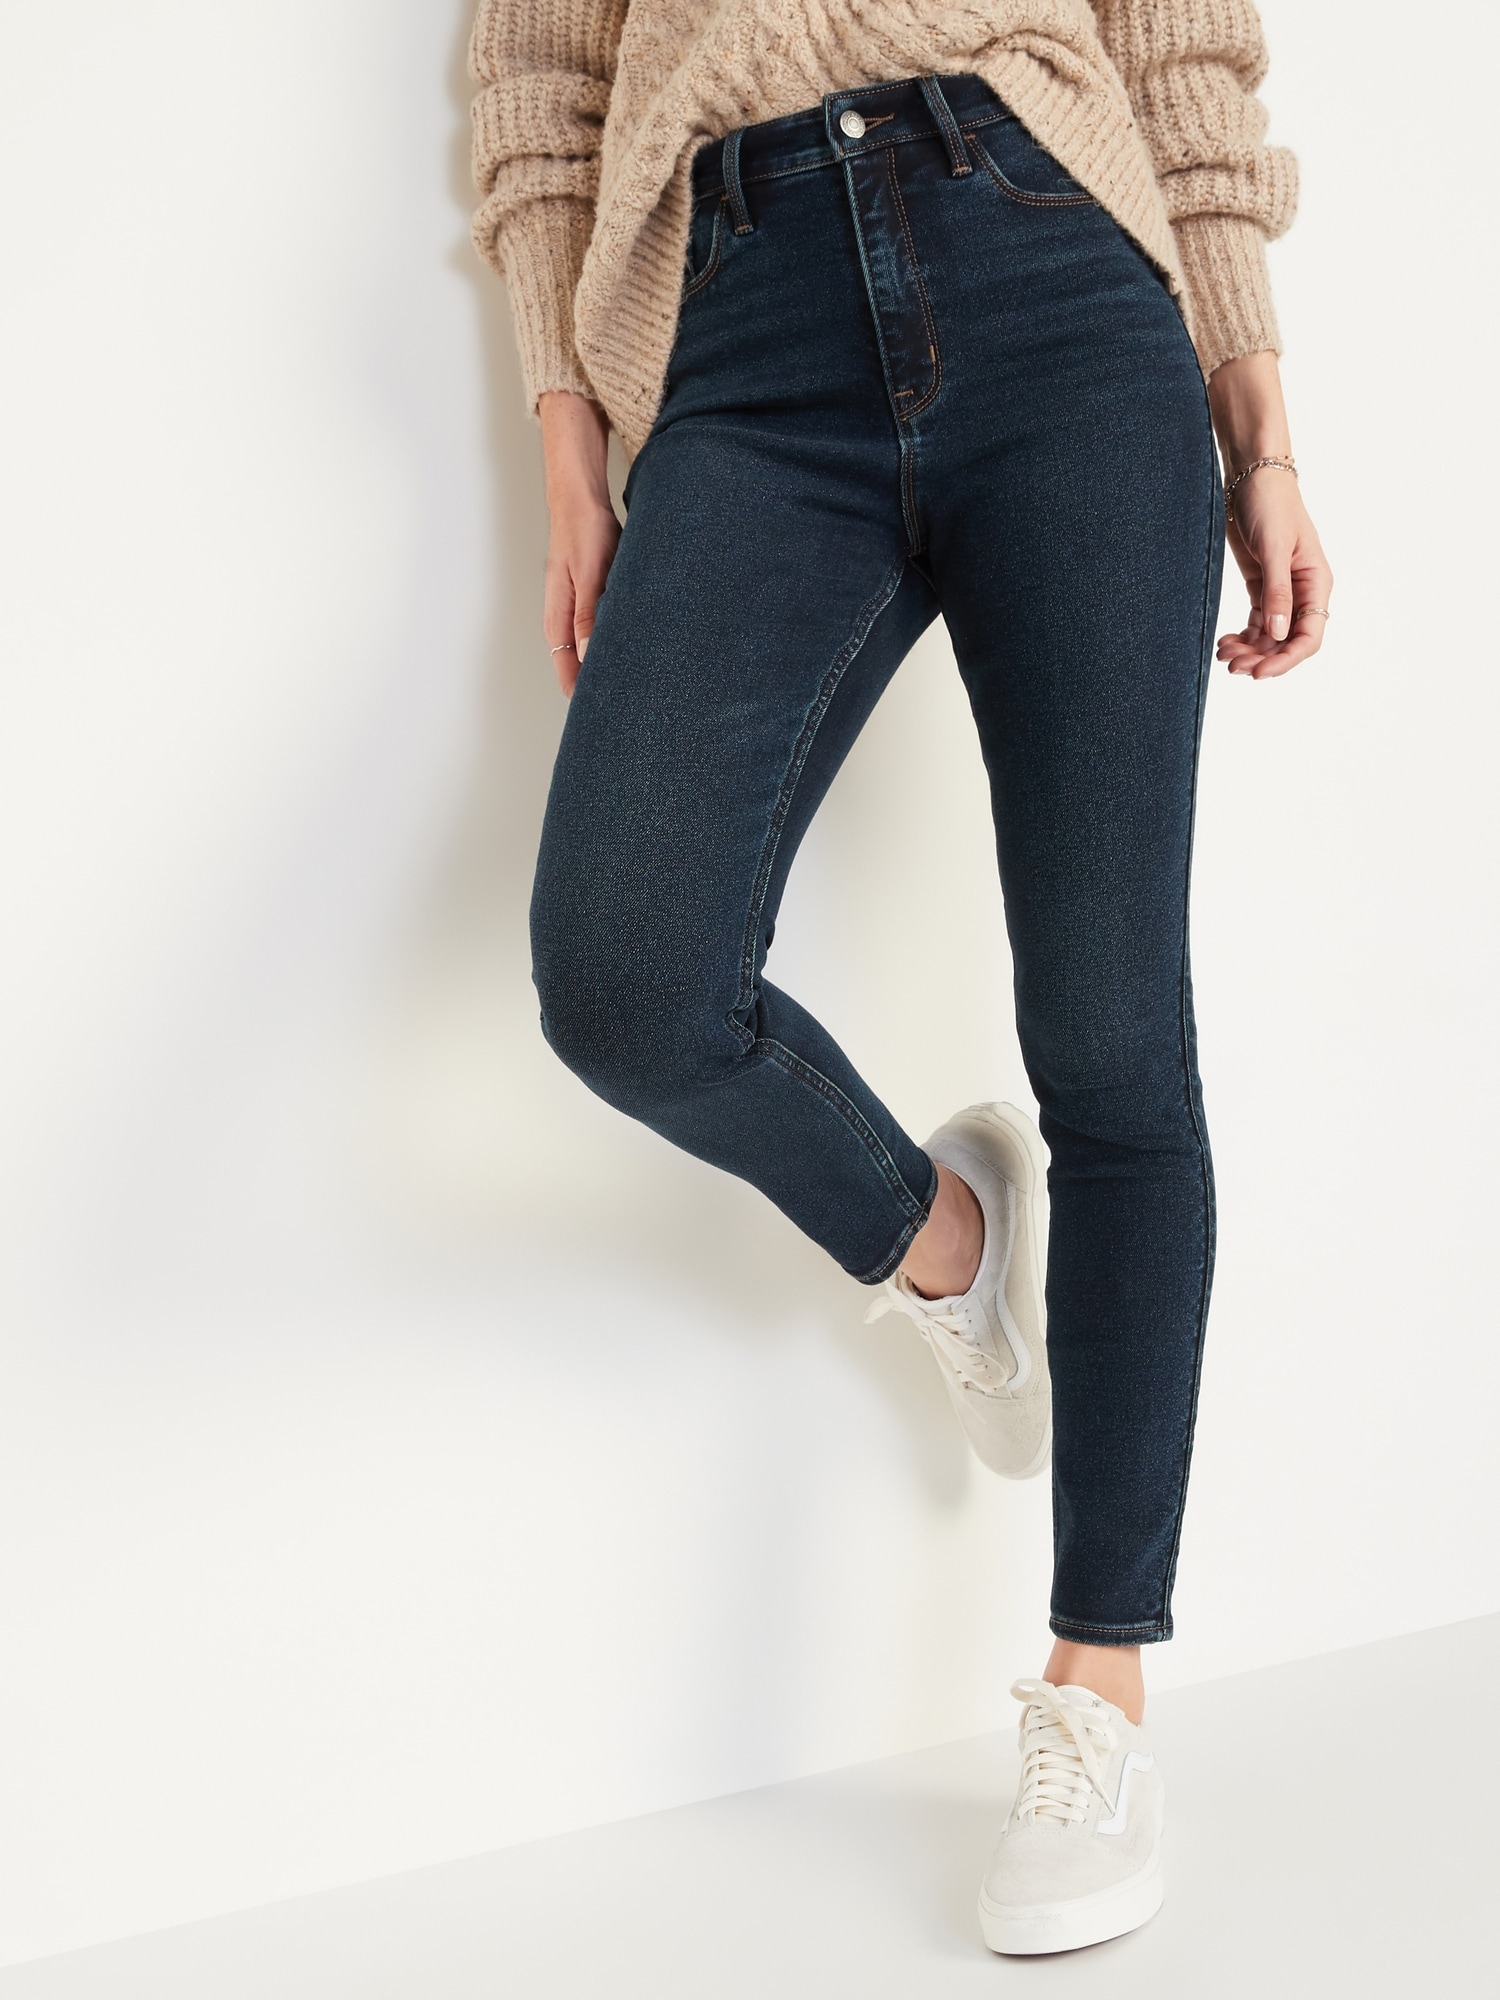 Women’s Ladies Skinny Stretch Denim Jeans 